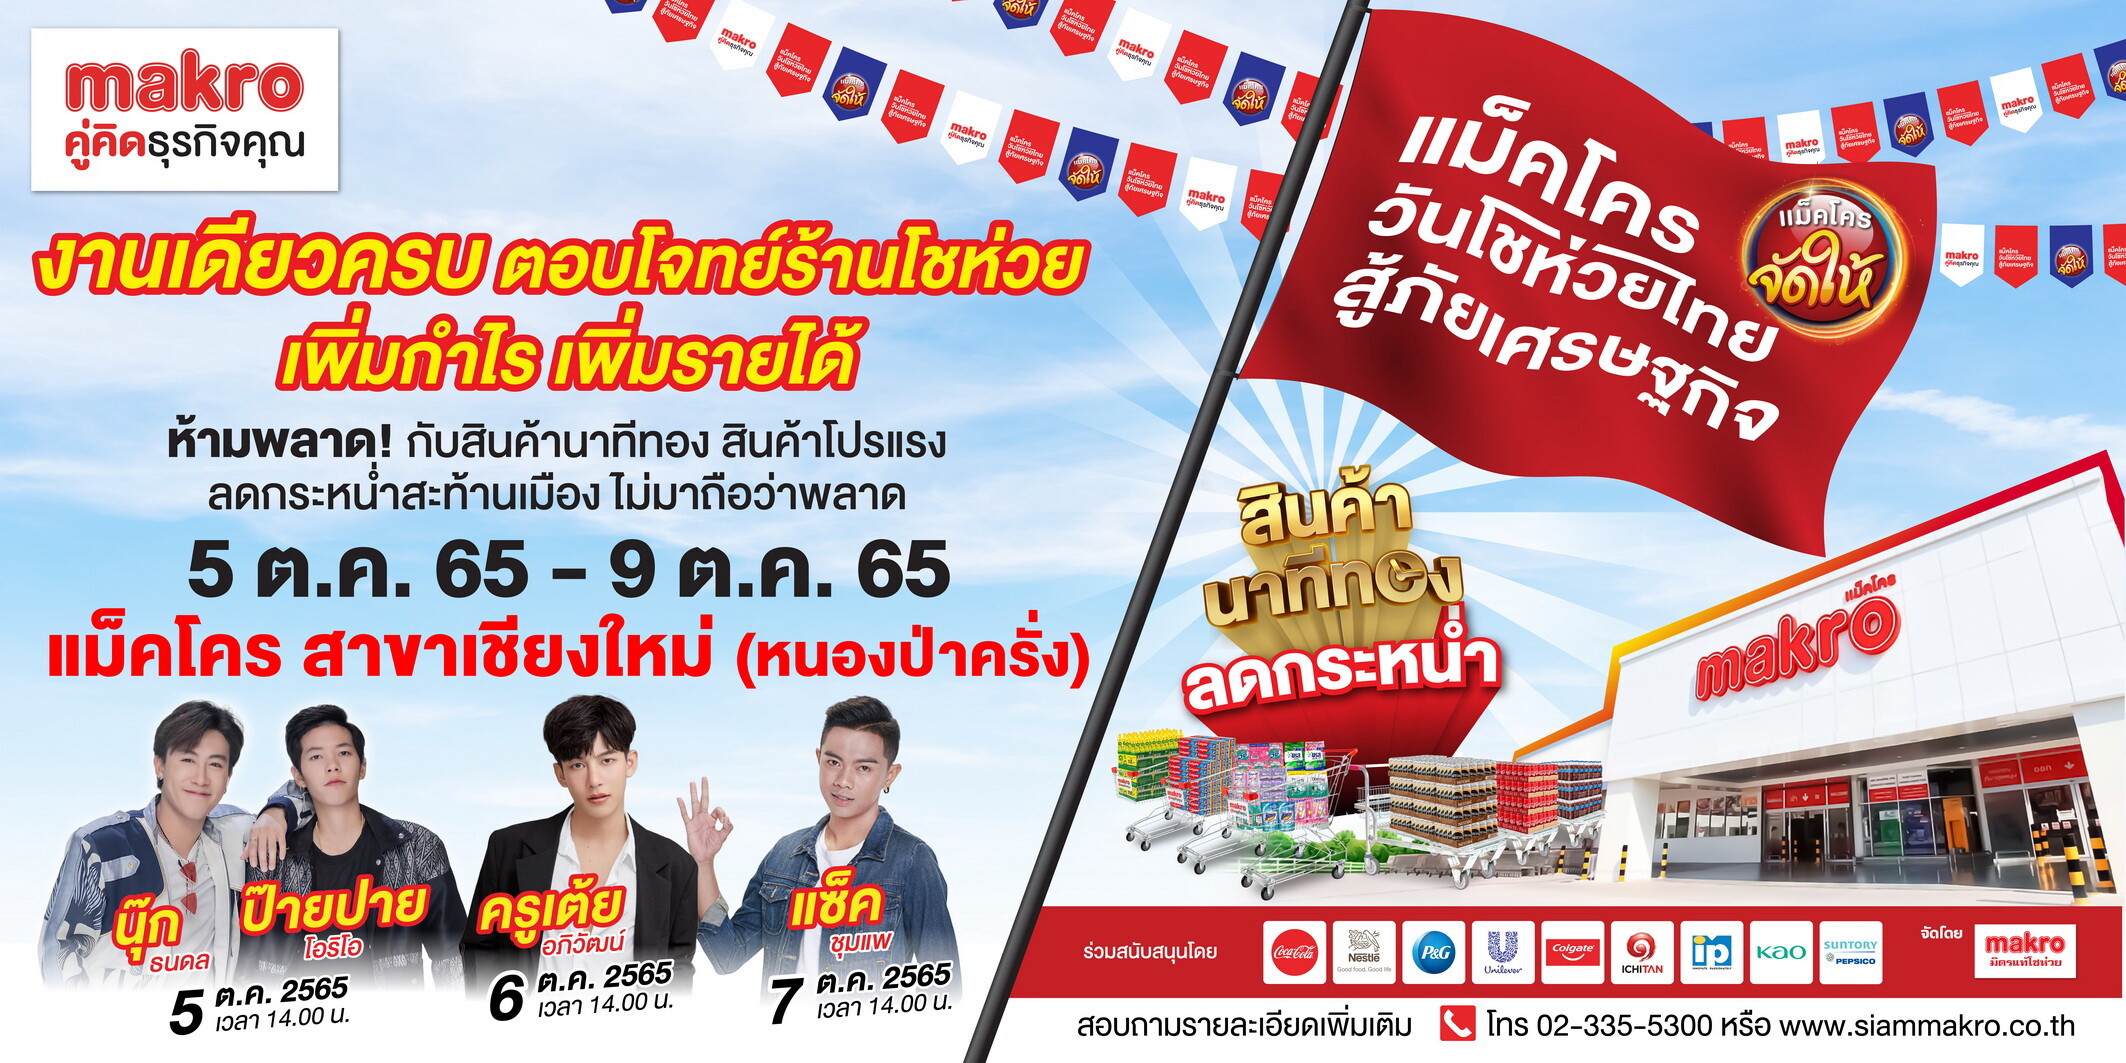 โชห่วยชาวเหนือเตรียมตัวให้พร้อม งาน "แม็คโคร วันโชห่วยไทย สู้ภัยเศรษฐกิจ" มาแล้ว